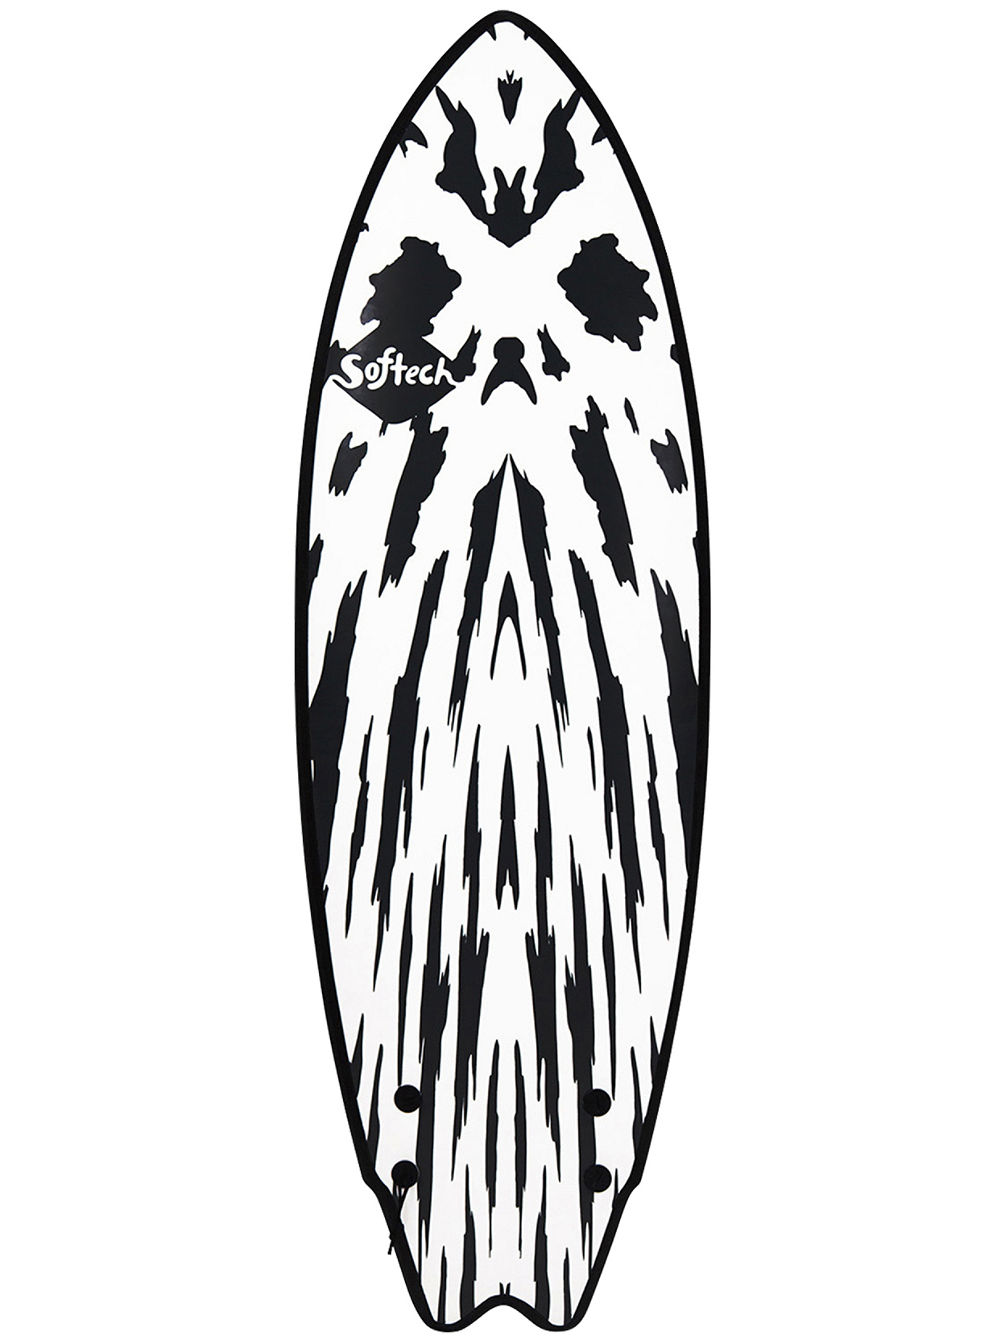 II Mason Twin 5&amp;#039;10 Softtop Surfboard